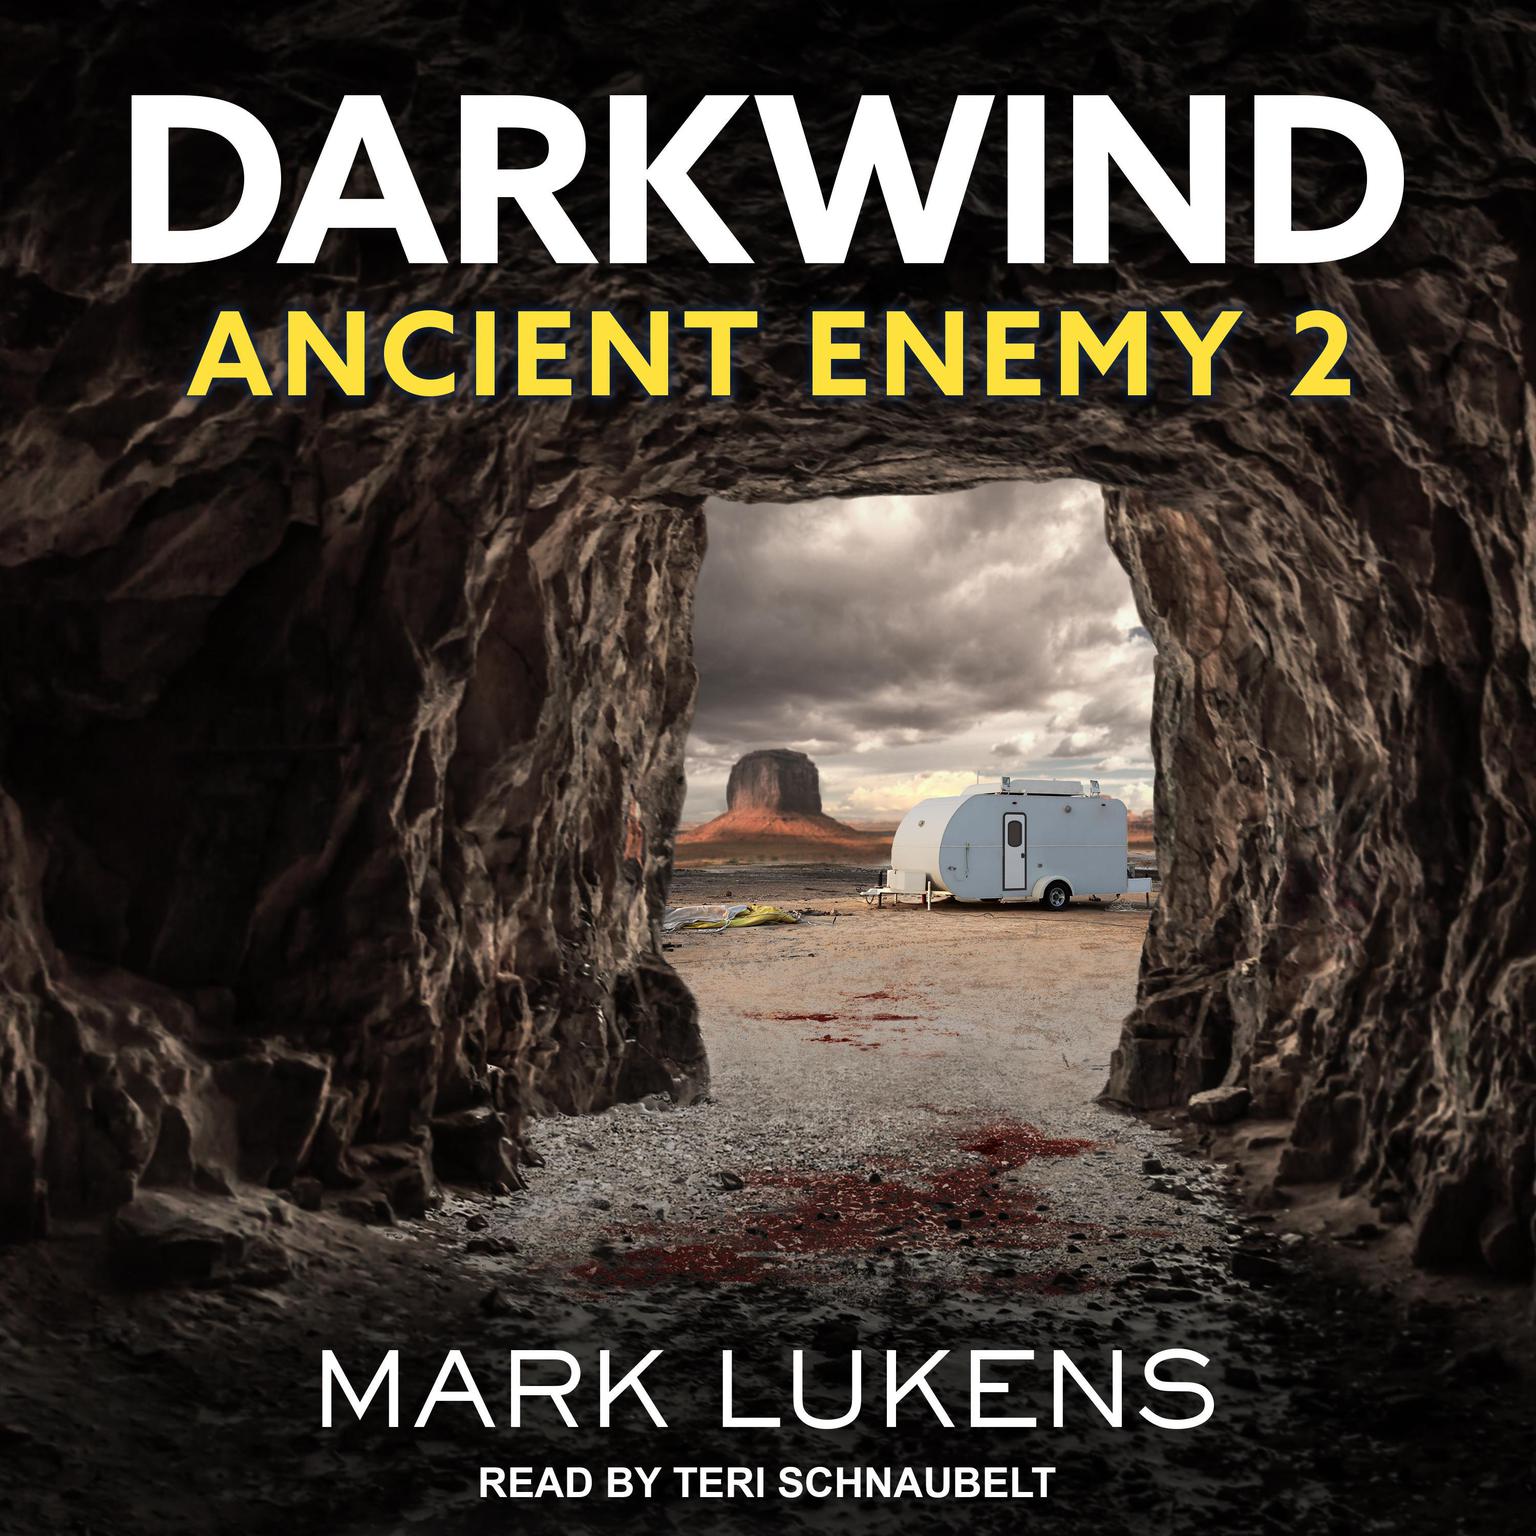 Darkwind: Ancient Enemy 2 Audiobook, by Mark Lukens